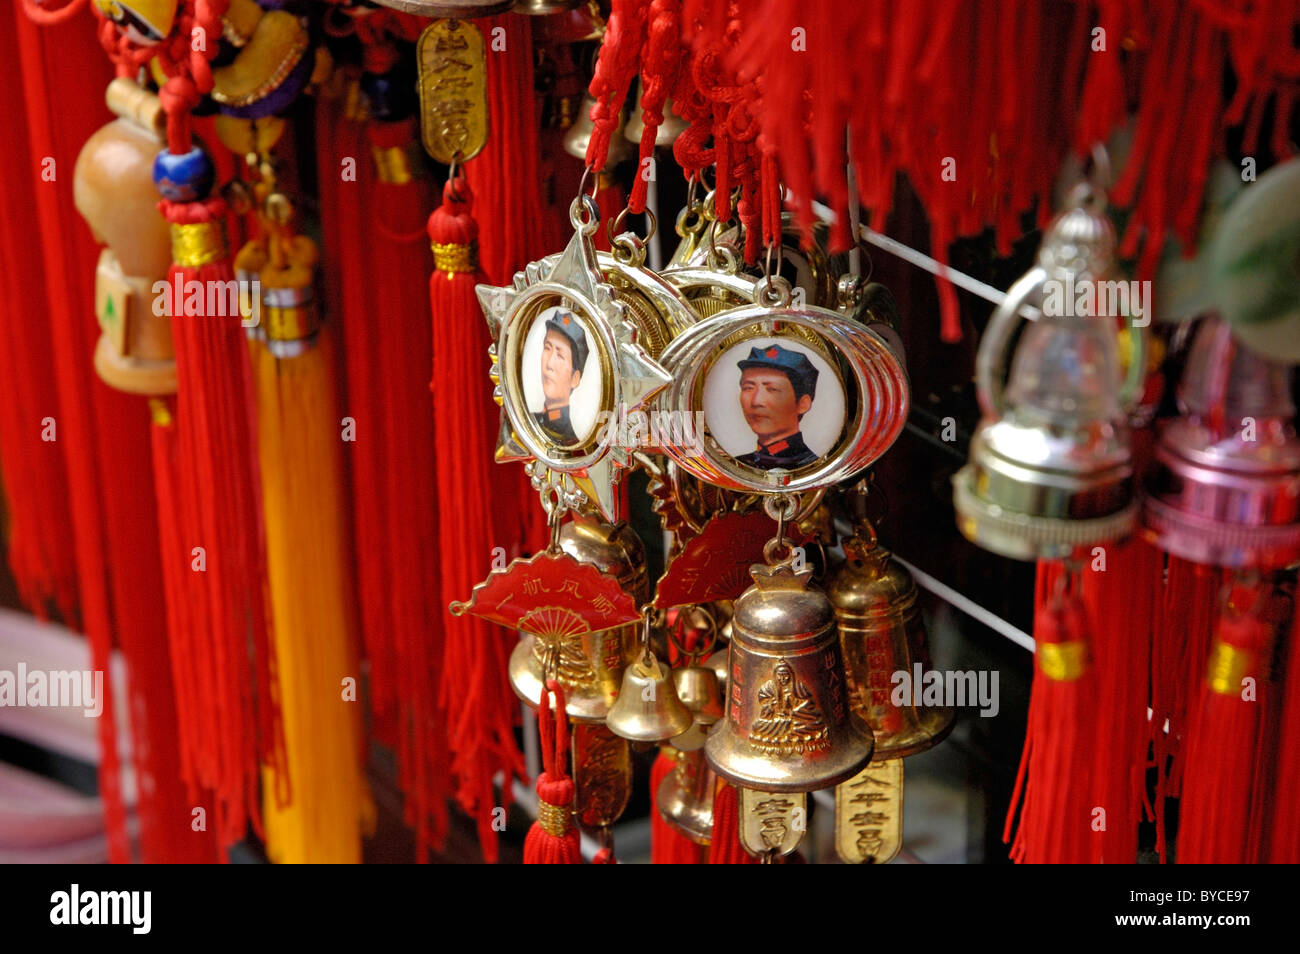 Souvenirs - Chia / Mao Zedong Mao Tse-tung médailles accroché dans un étal extérieur souvenirs Behai Park, Beijing, Chine. Banque D'Images